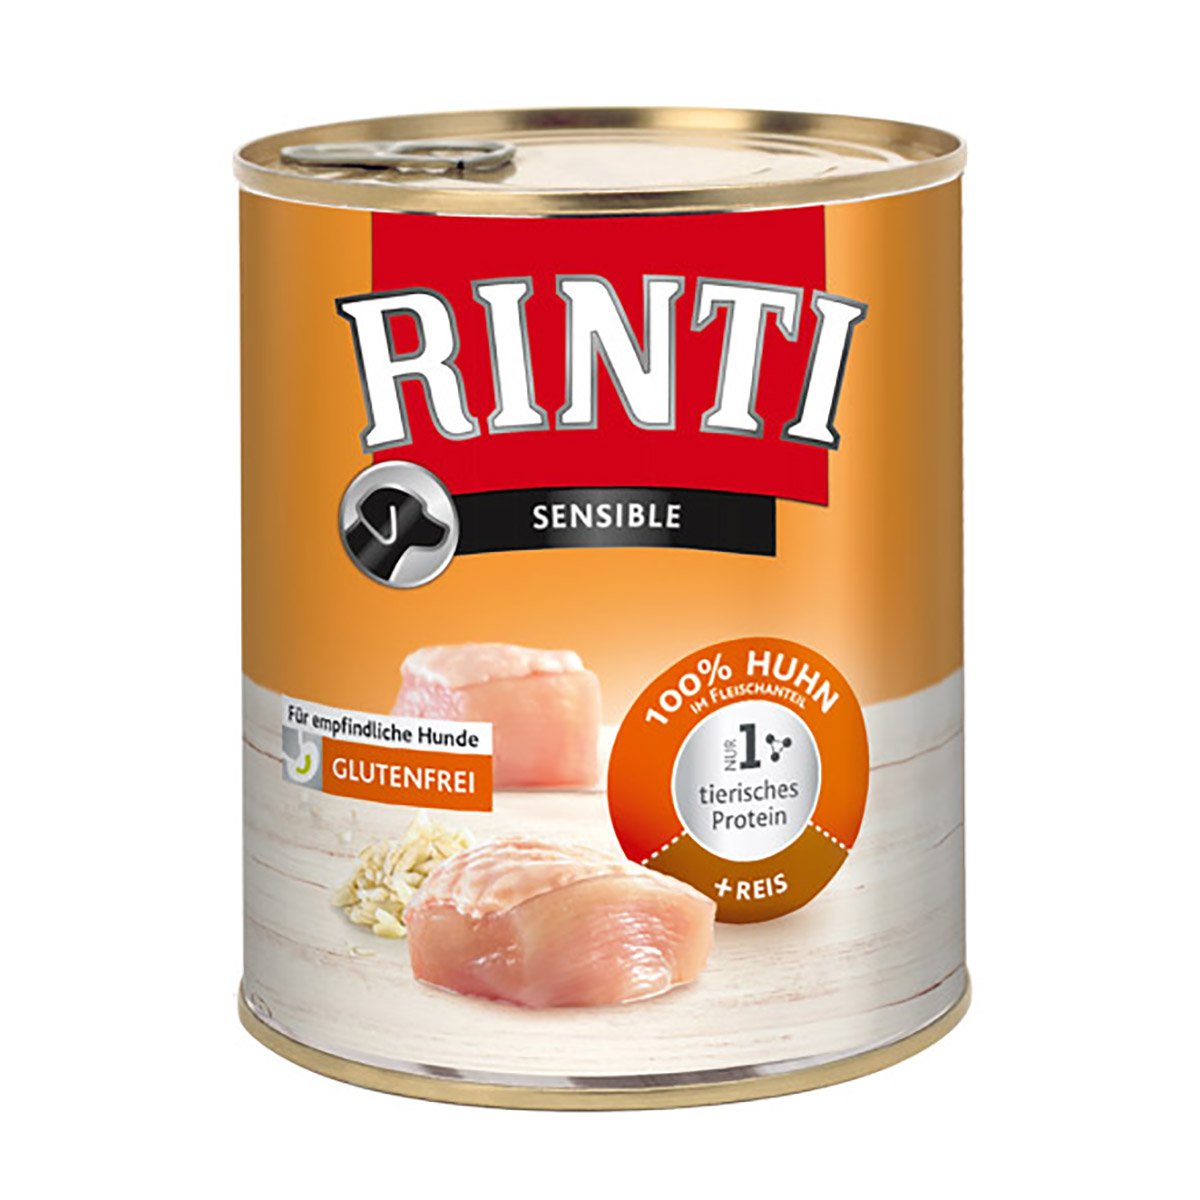 Rinti Sensible Huhn und Reis 12x800g von Rinti